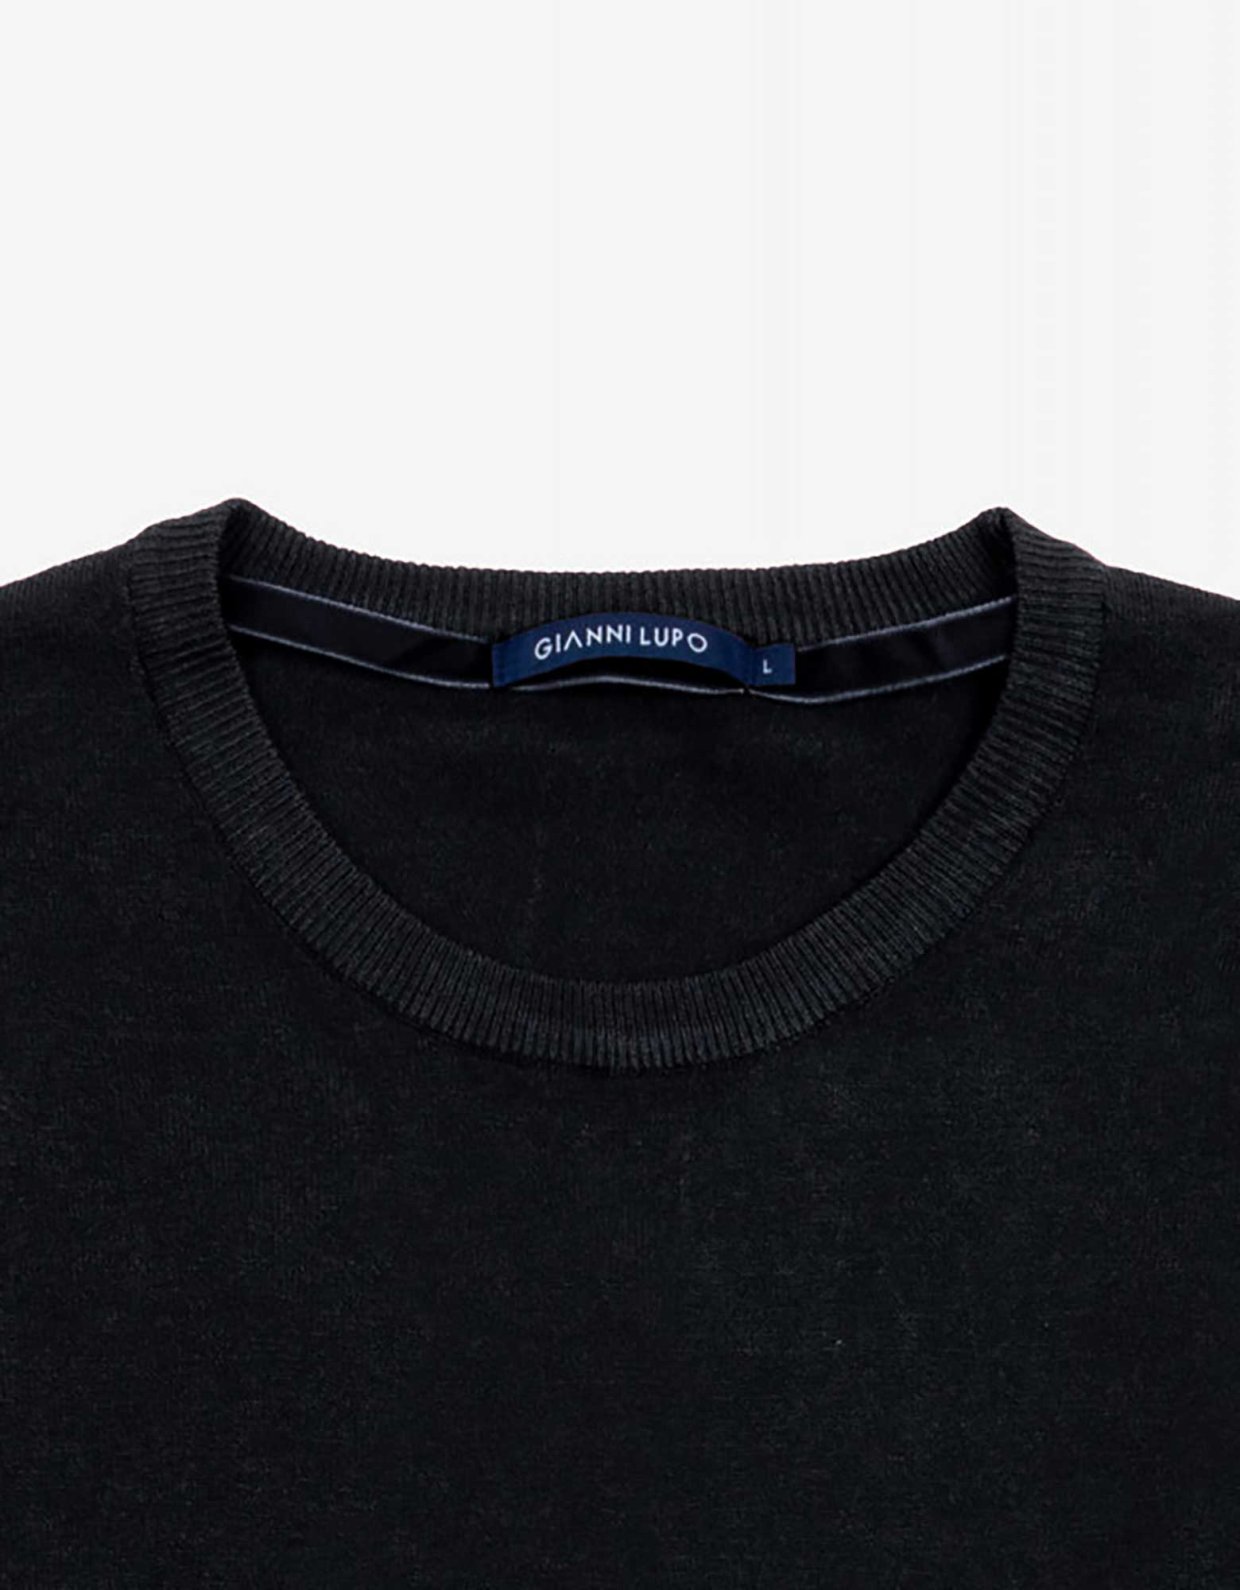 Gianni Lupo Black round neck sweater